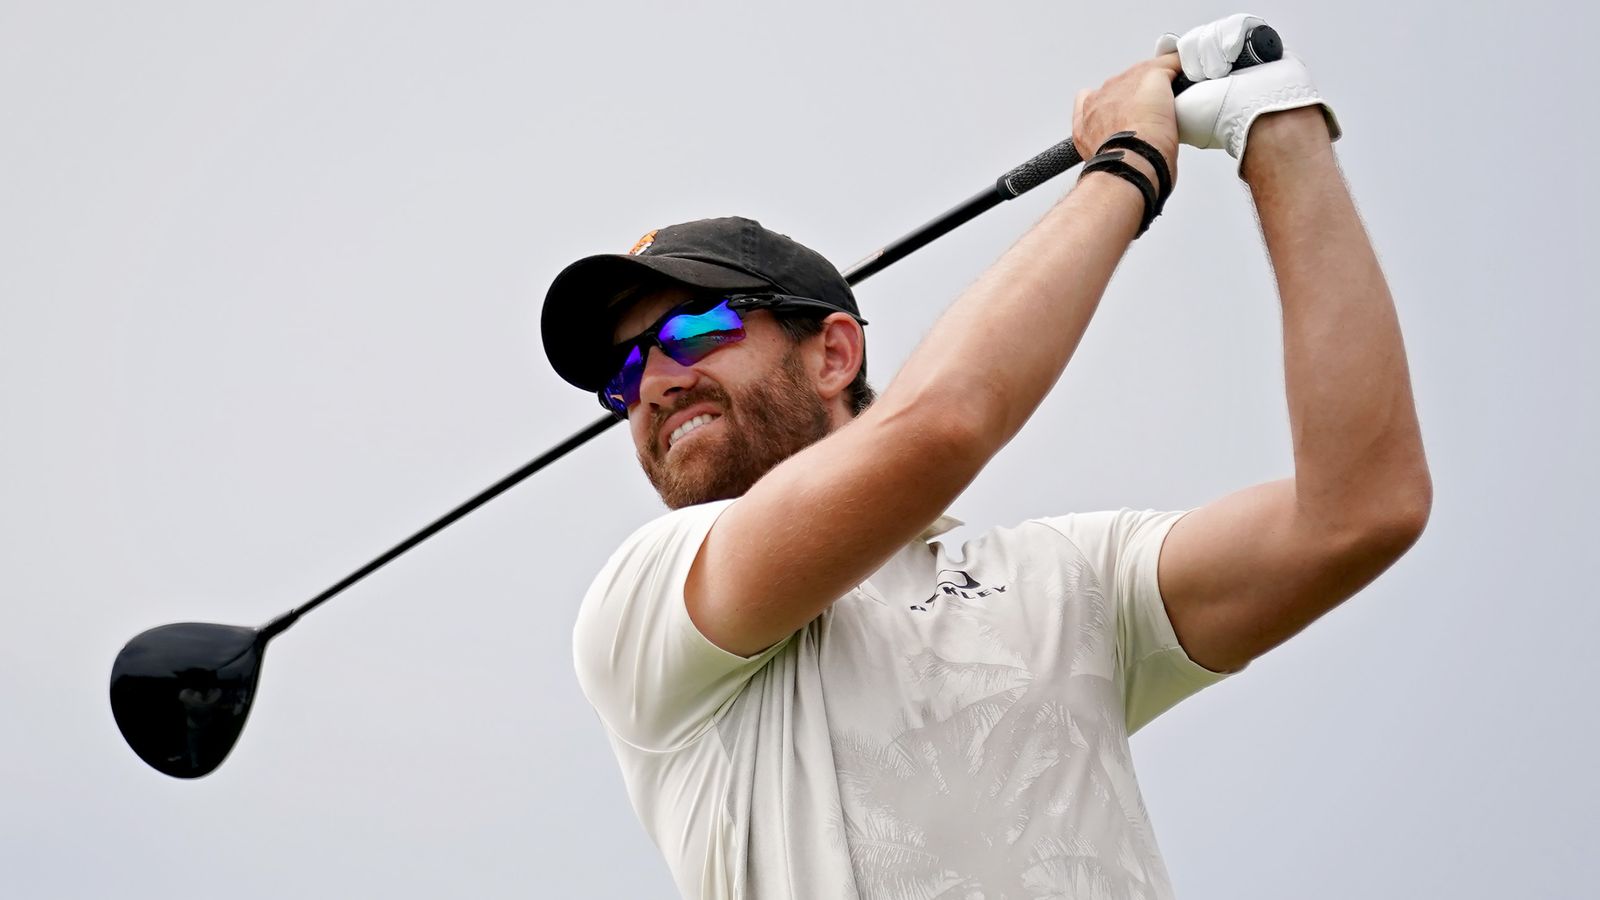 Patrick Rodgers führt mit einem Schlag bei den Valero Texas Open und sucht den ersten PGA Tour-Titel seiner Karriere |  Golf-Neuigkeiten